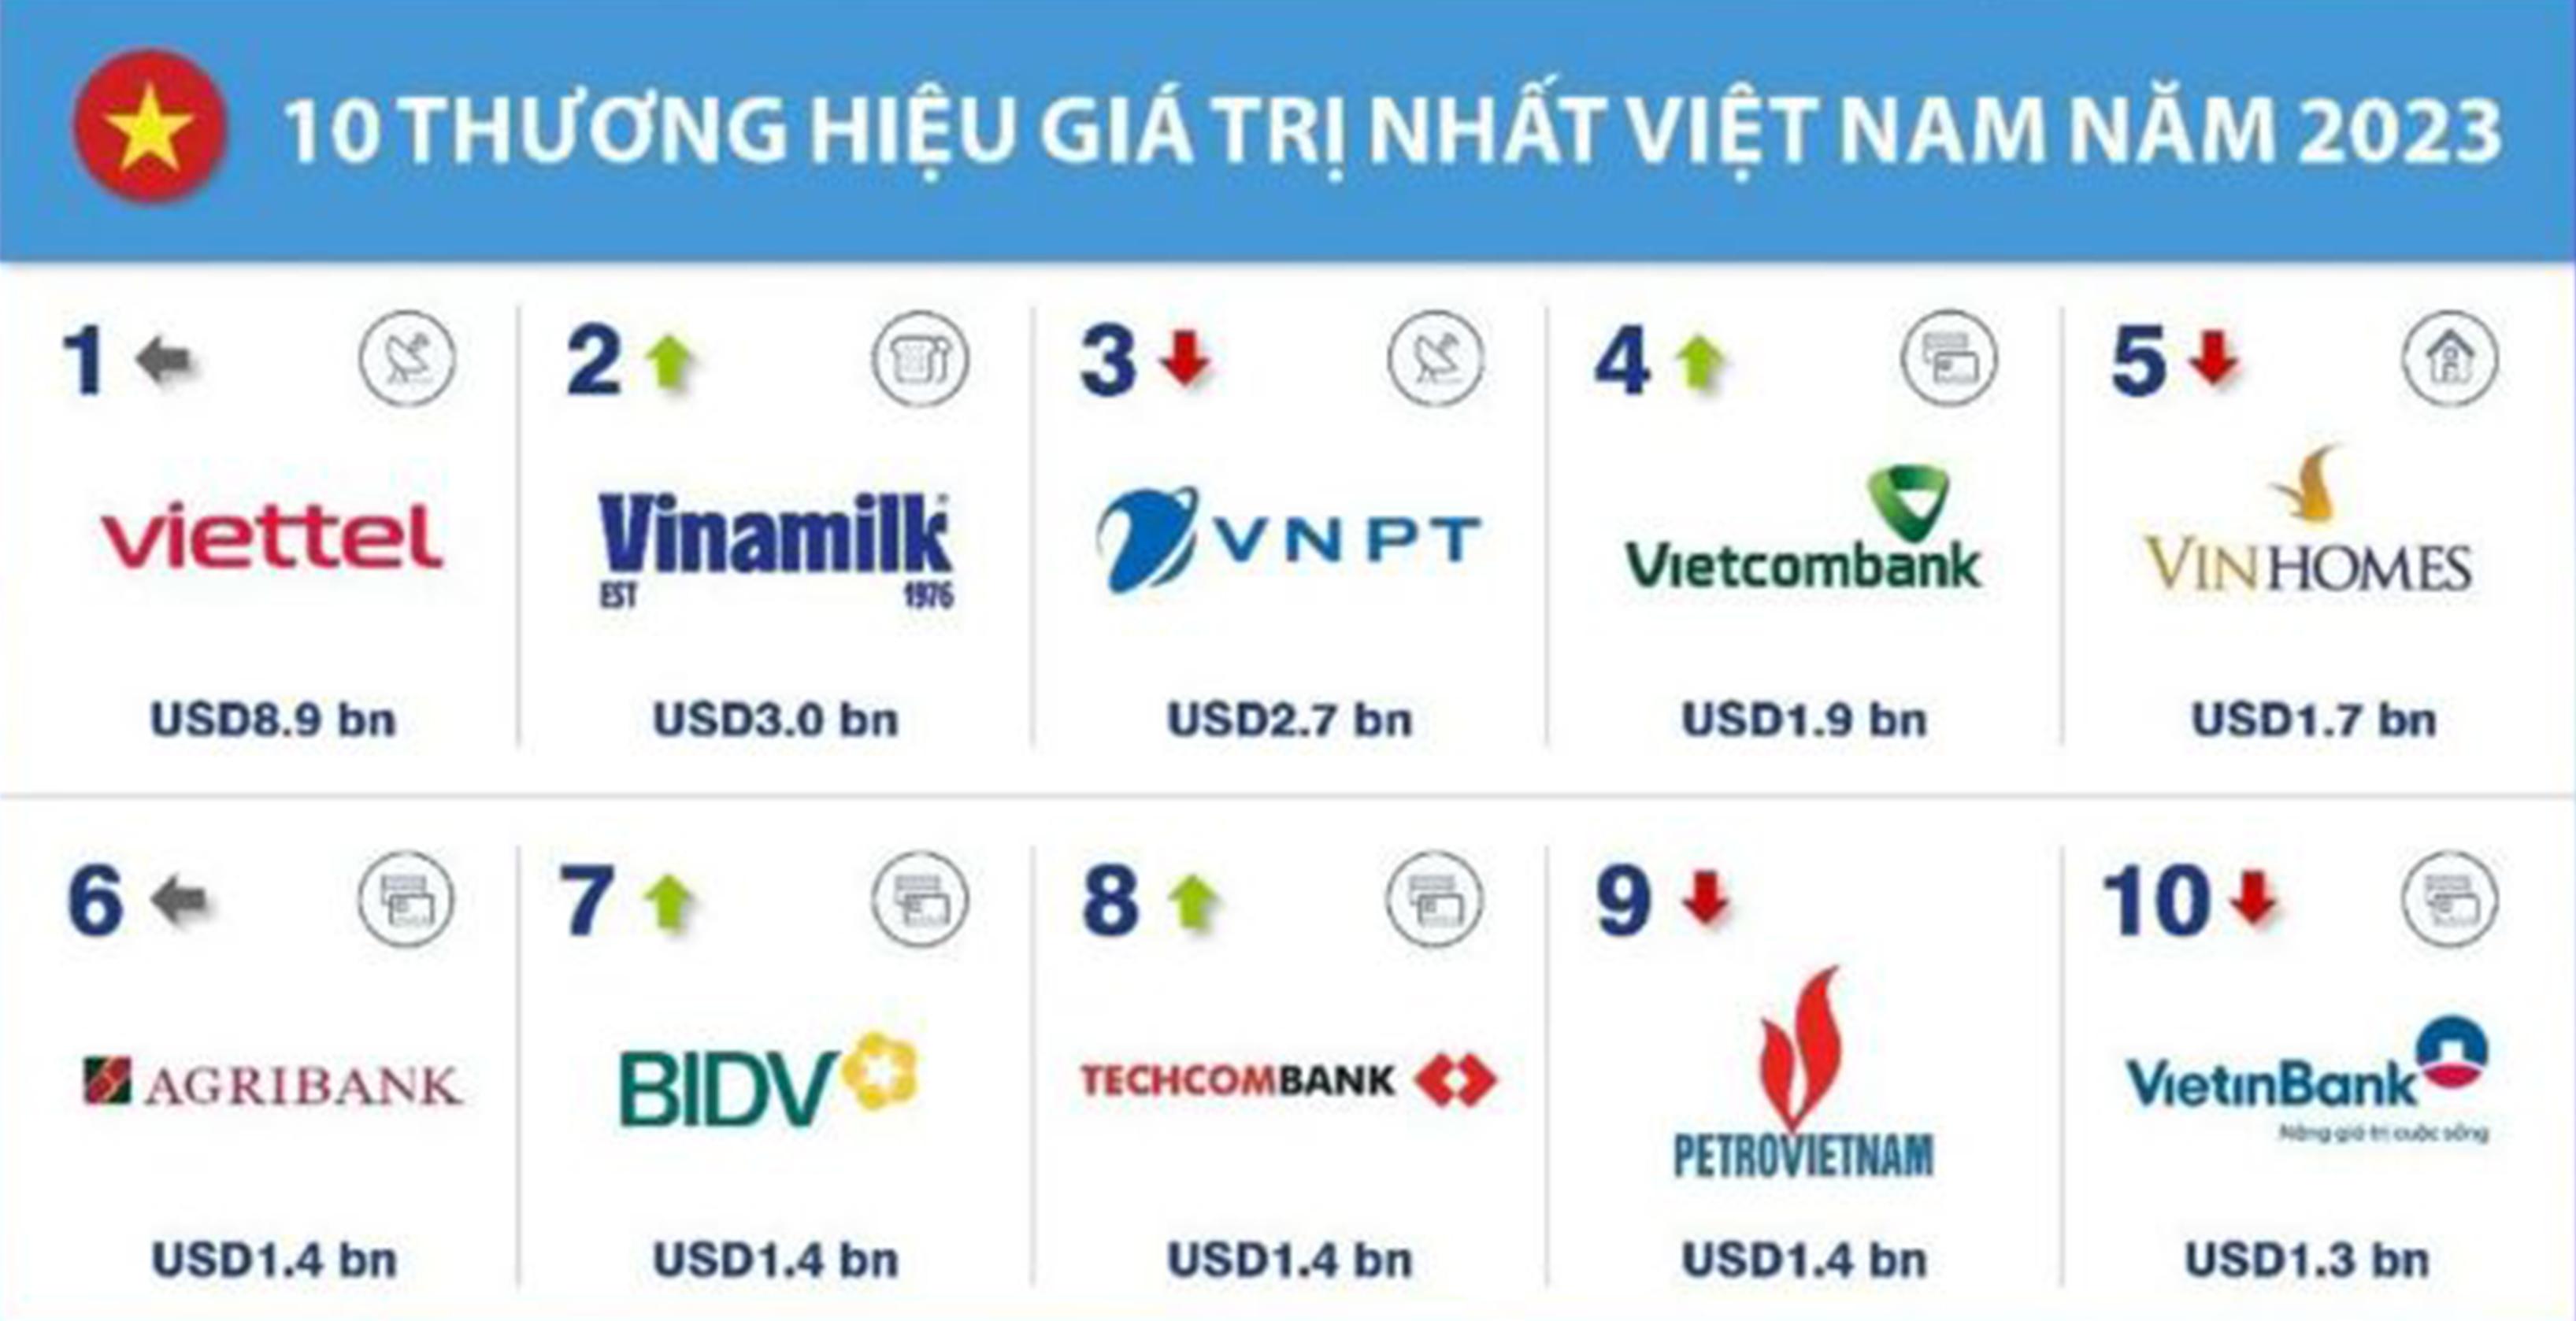  Bảng xếp hạng Top 10 thương hiệu giá trị nhất tại Việt Nam